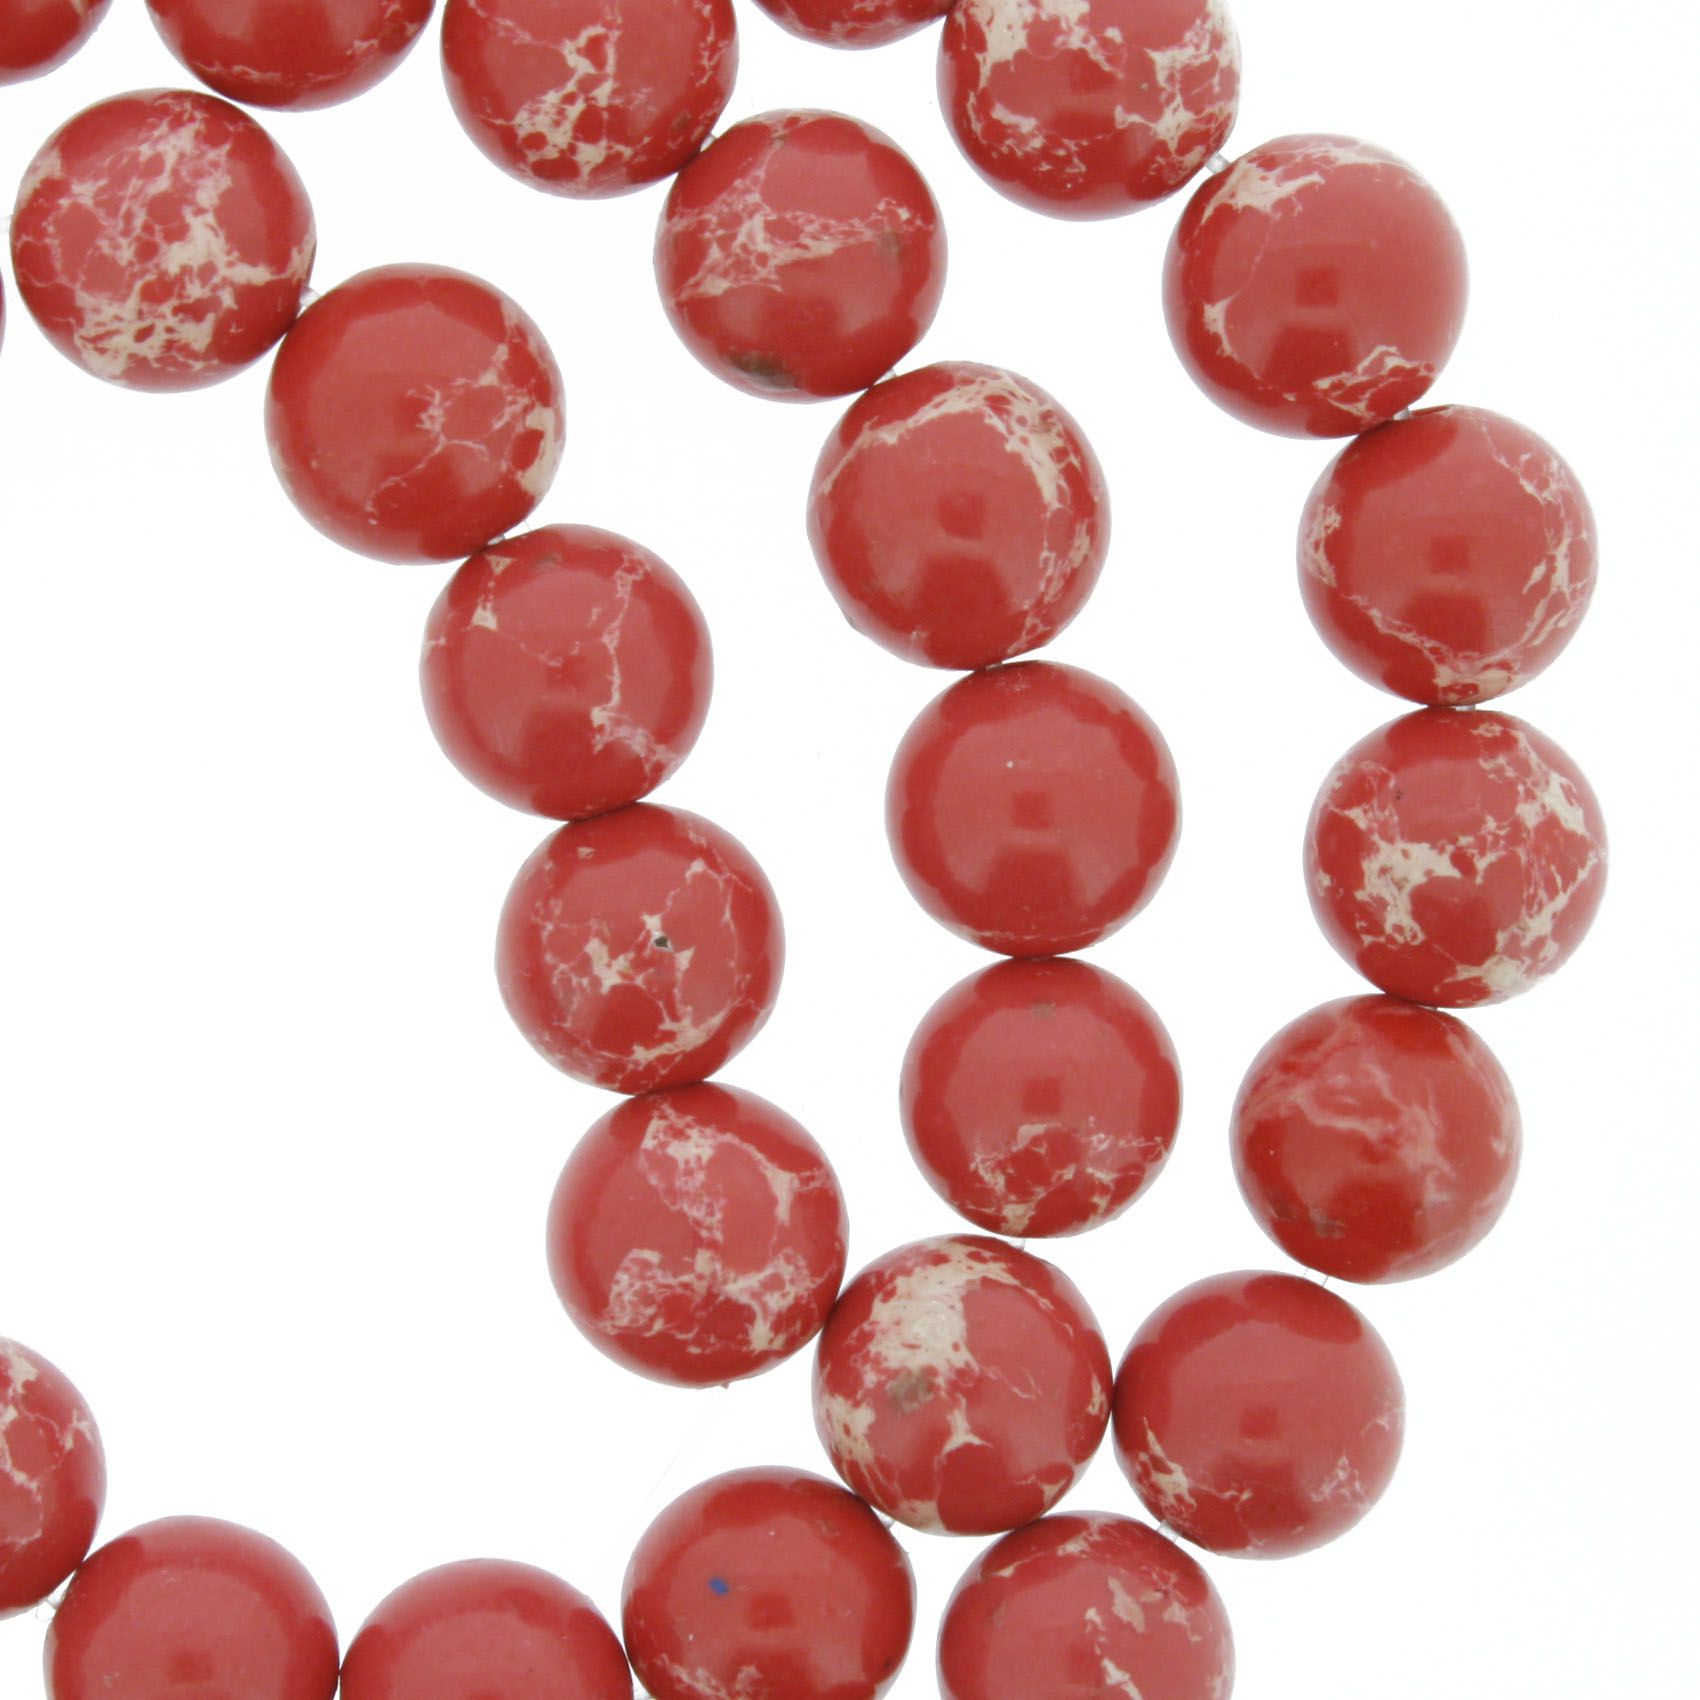 Fio de Pedra - Jaspe Imperial Vermelha - 8mm  - Stéphanie Bijoux® - Peças para Bijuterias e Artesanato